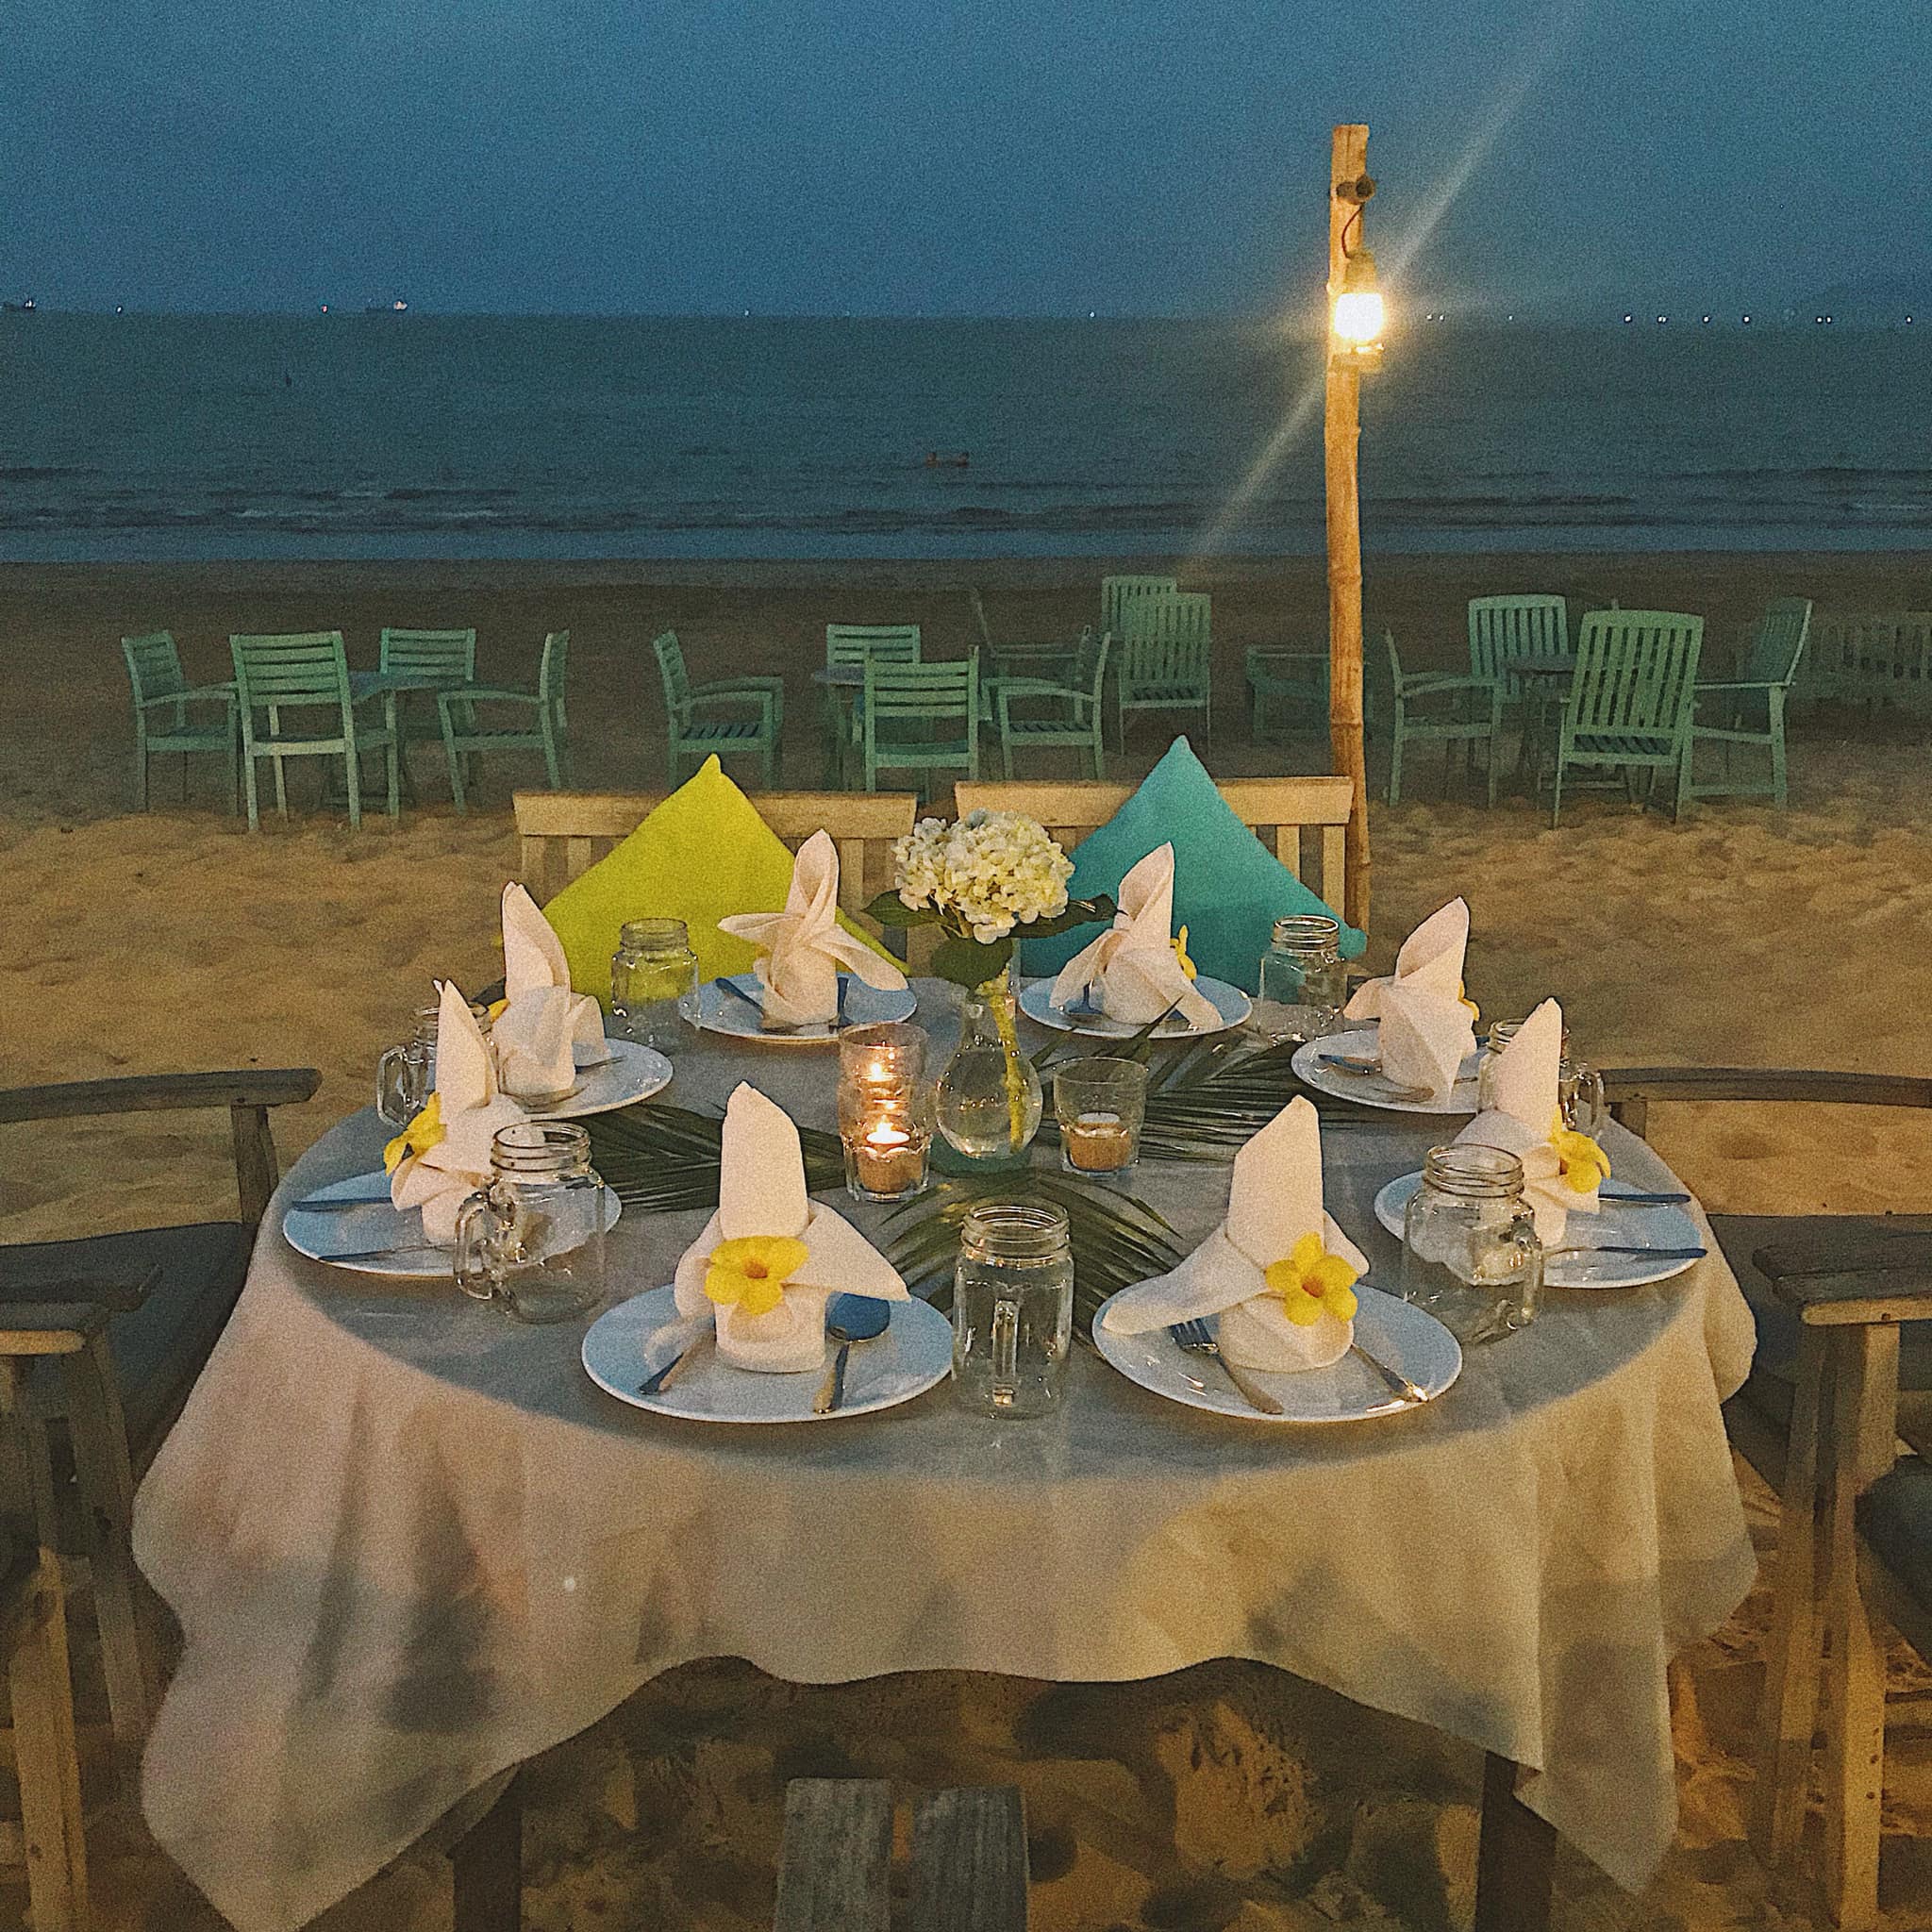 a chau land to chuc gala dinner lang man ben bo bien quy nhon 4 - Á Châu Land tổ chức gala dinner lãng mạn bên bờ biển Quy Nhơn